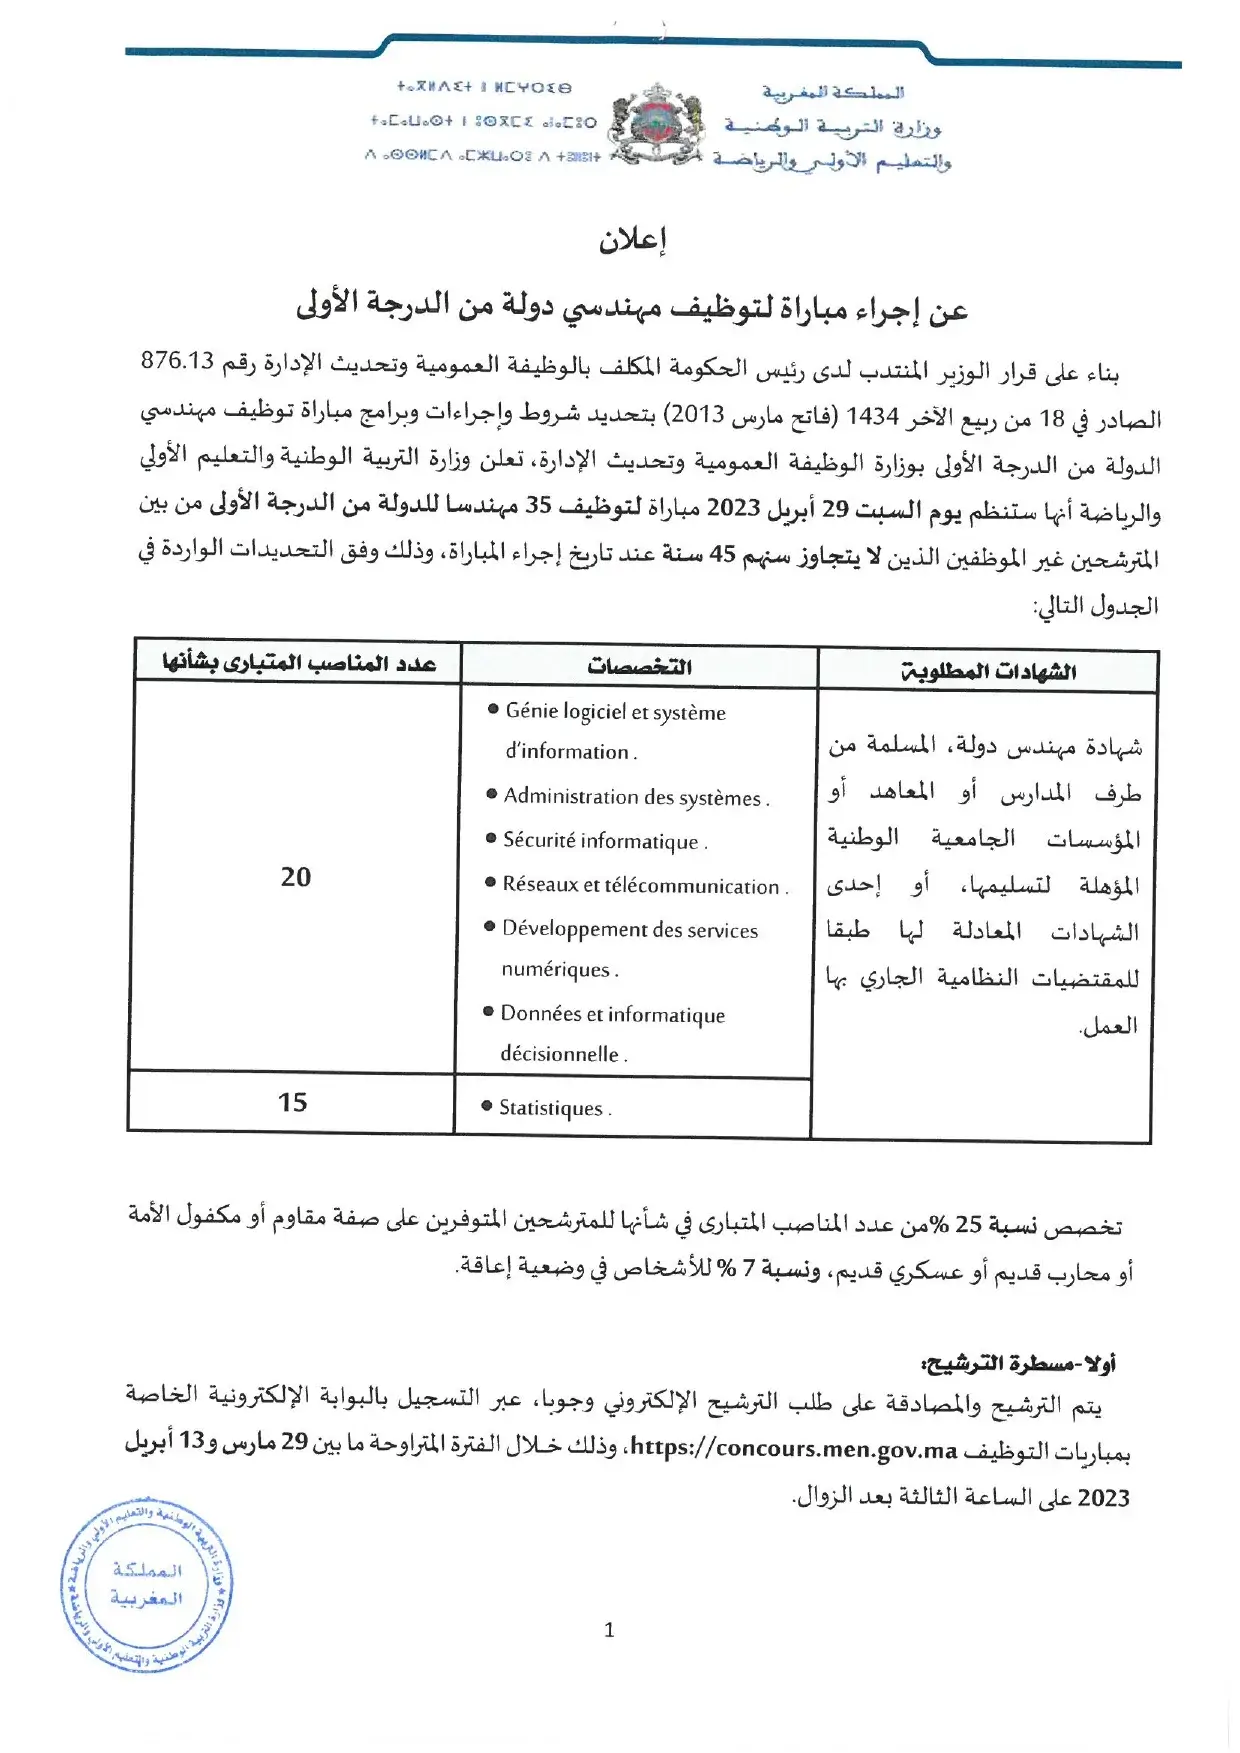 Concours Ministère de l'Education nationale 2023 (184 postes)